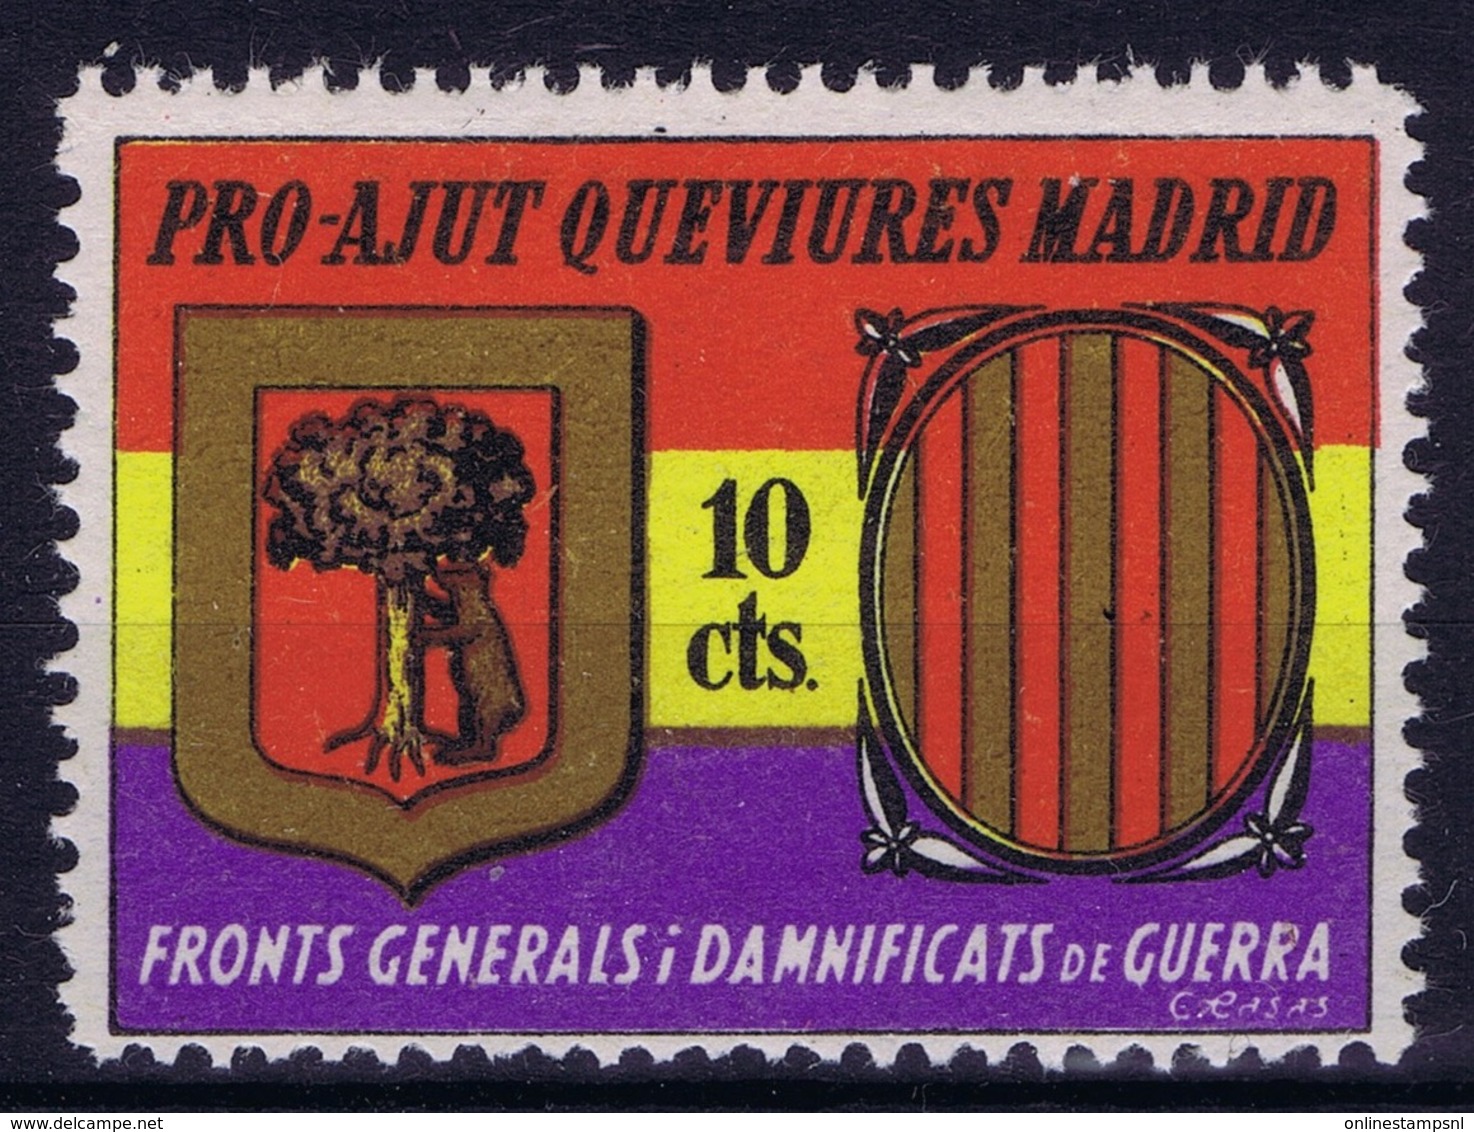 Spain: Pro-Ajut Queviures Madrid - Spanish Civil War Labels